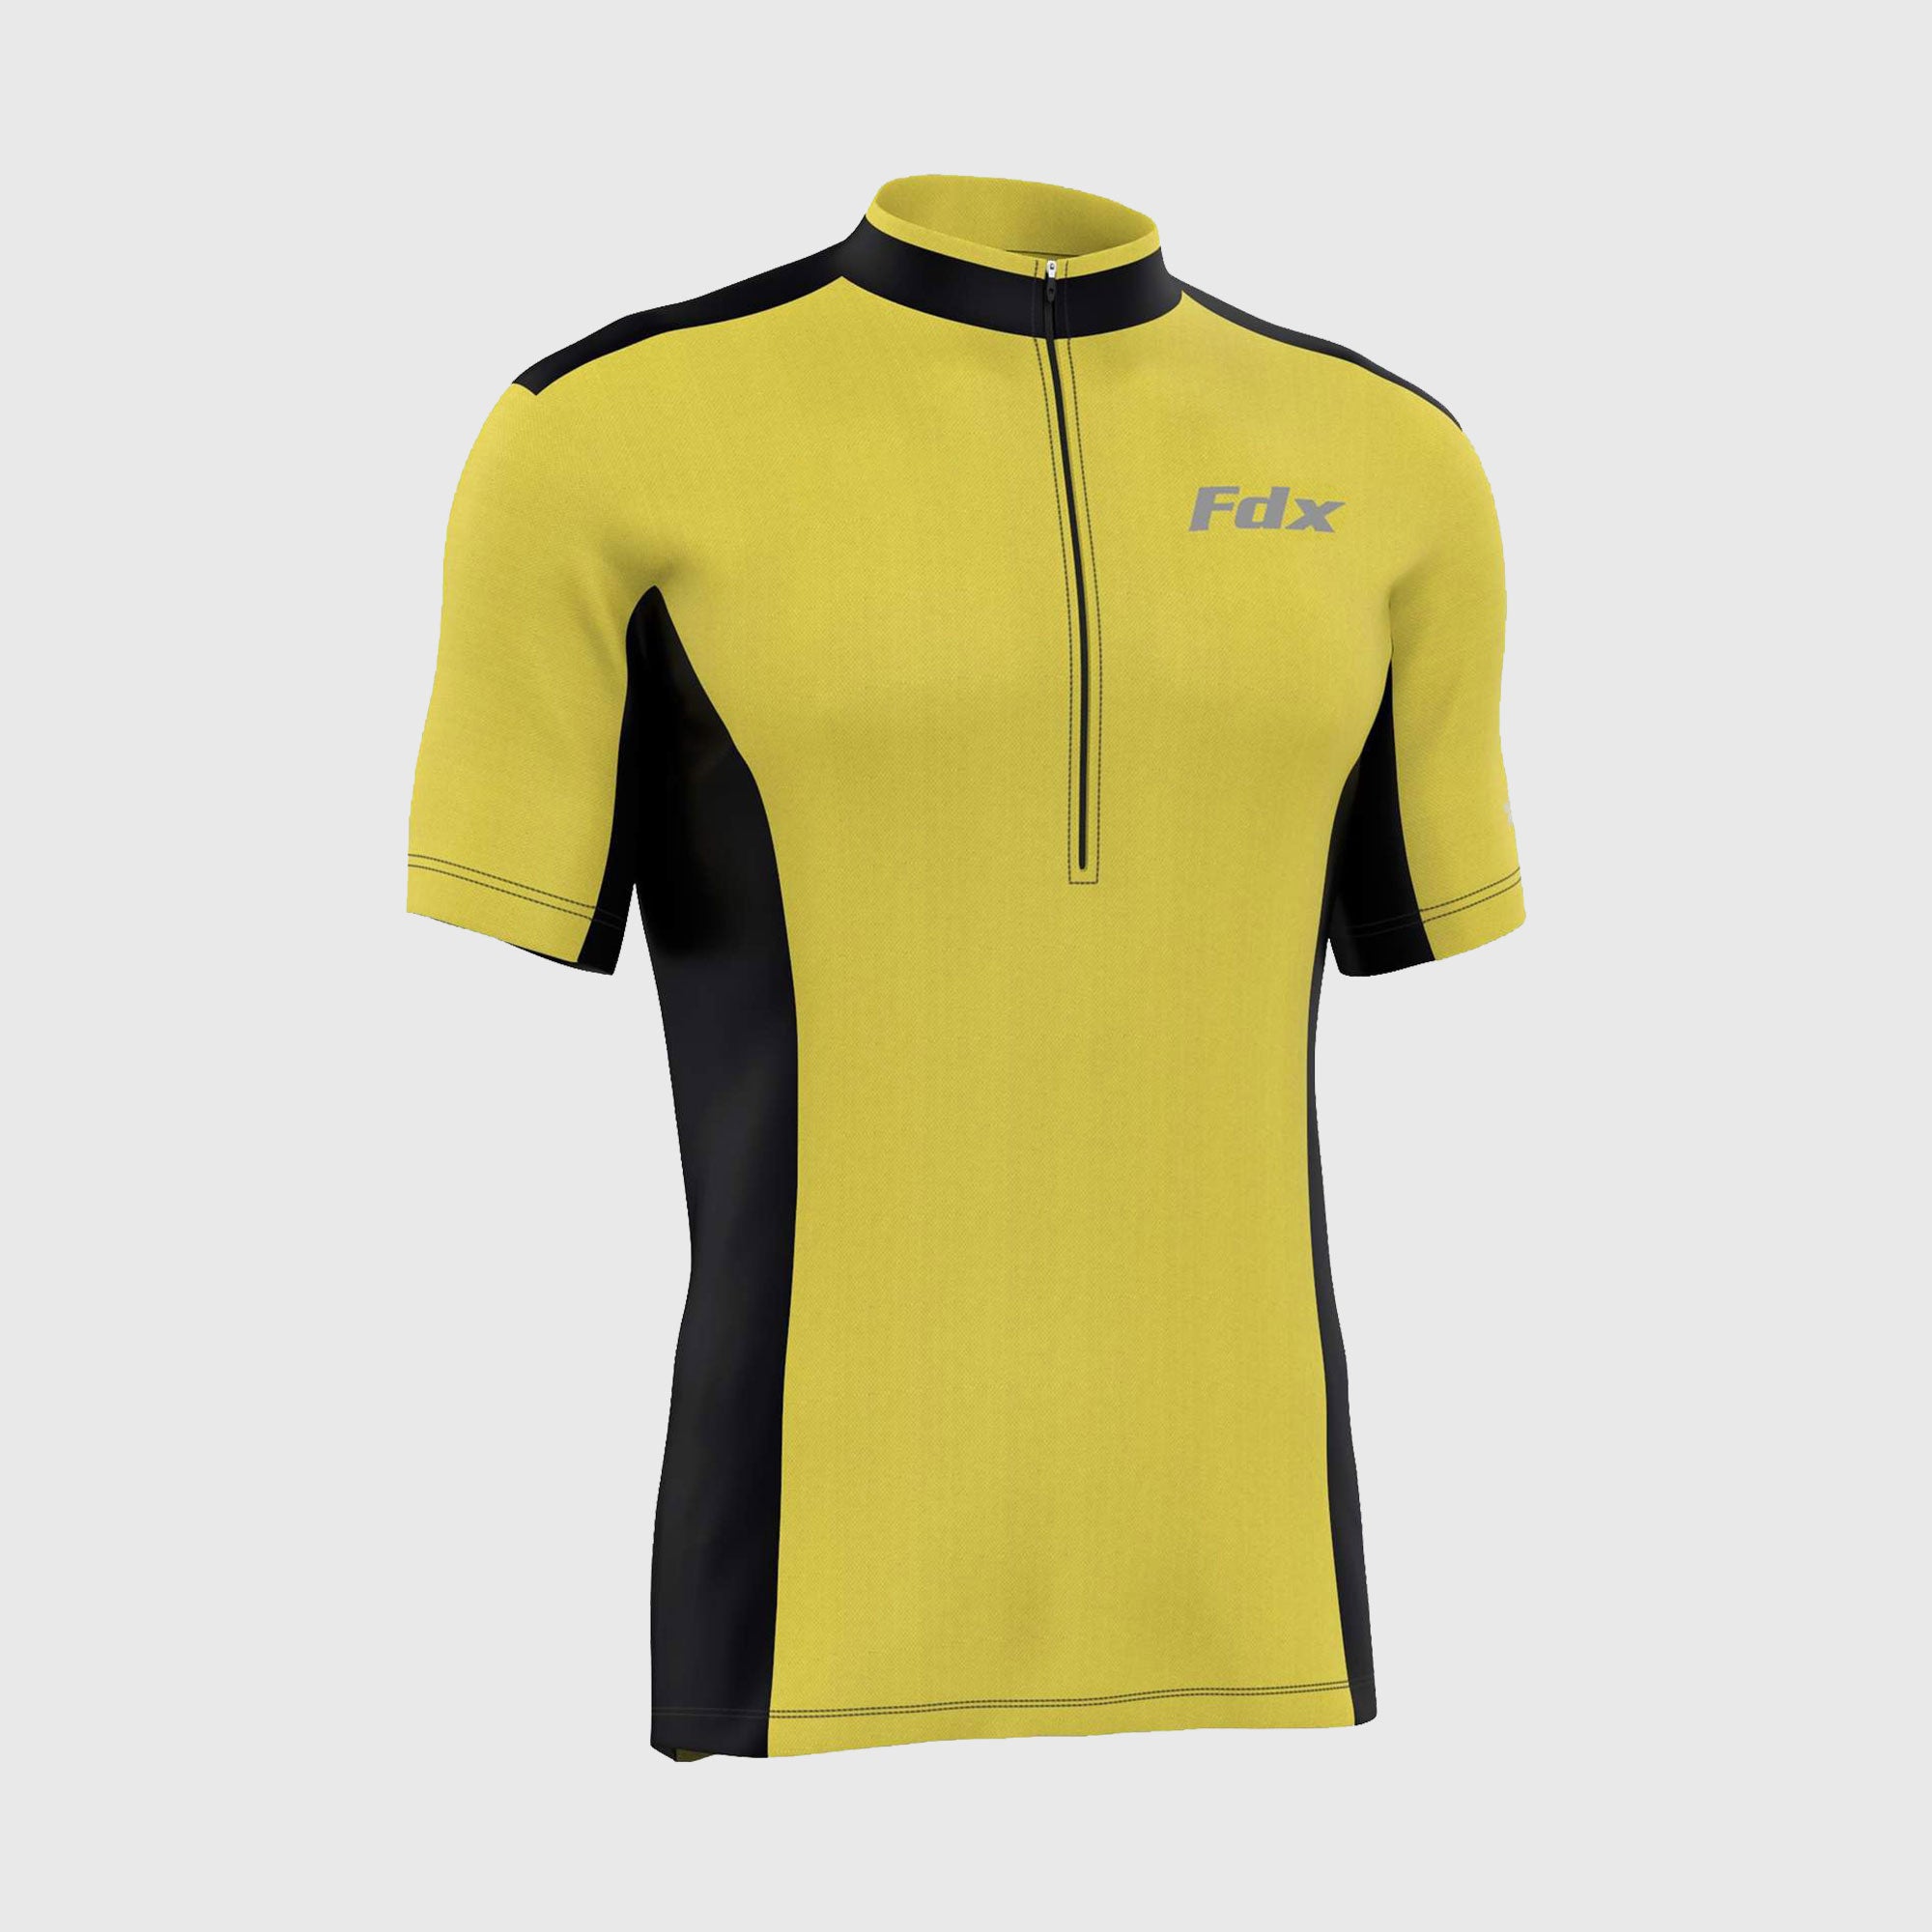 Fdx Mens Yellow & Black Short Sleeve Cycling Jersey for Summer Best Road Bike Wear Top Light Weight, Full Zipper, Pockets & Hi-viz Reflectors - Vertex